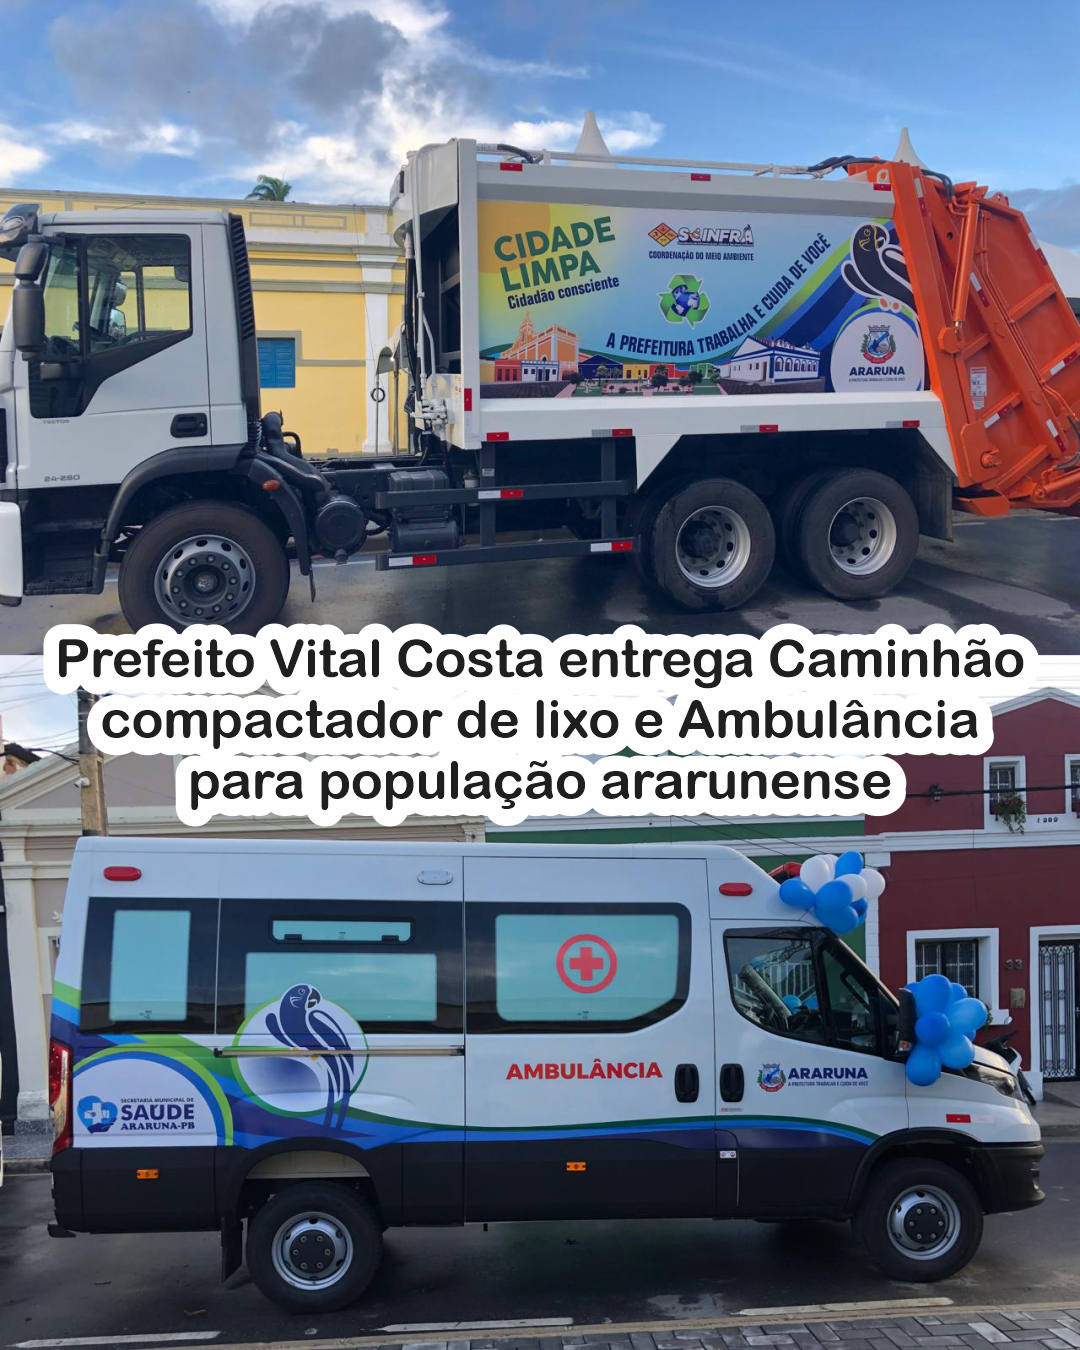 Prefeito Vital Costa entrega Caminhão compactador de lixo e Ambulância para população ararunense